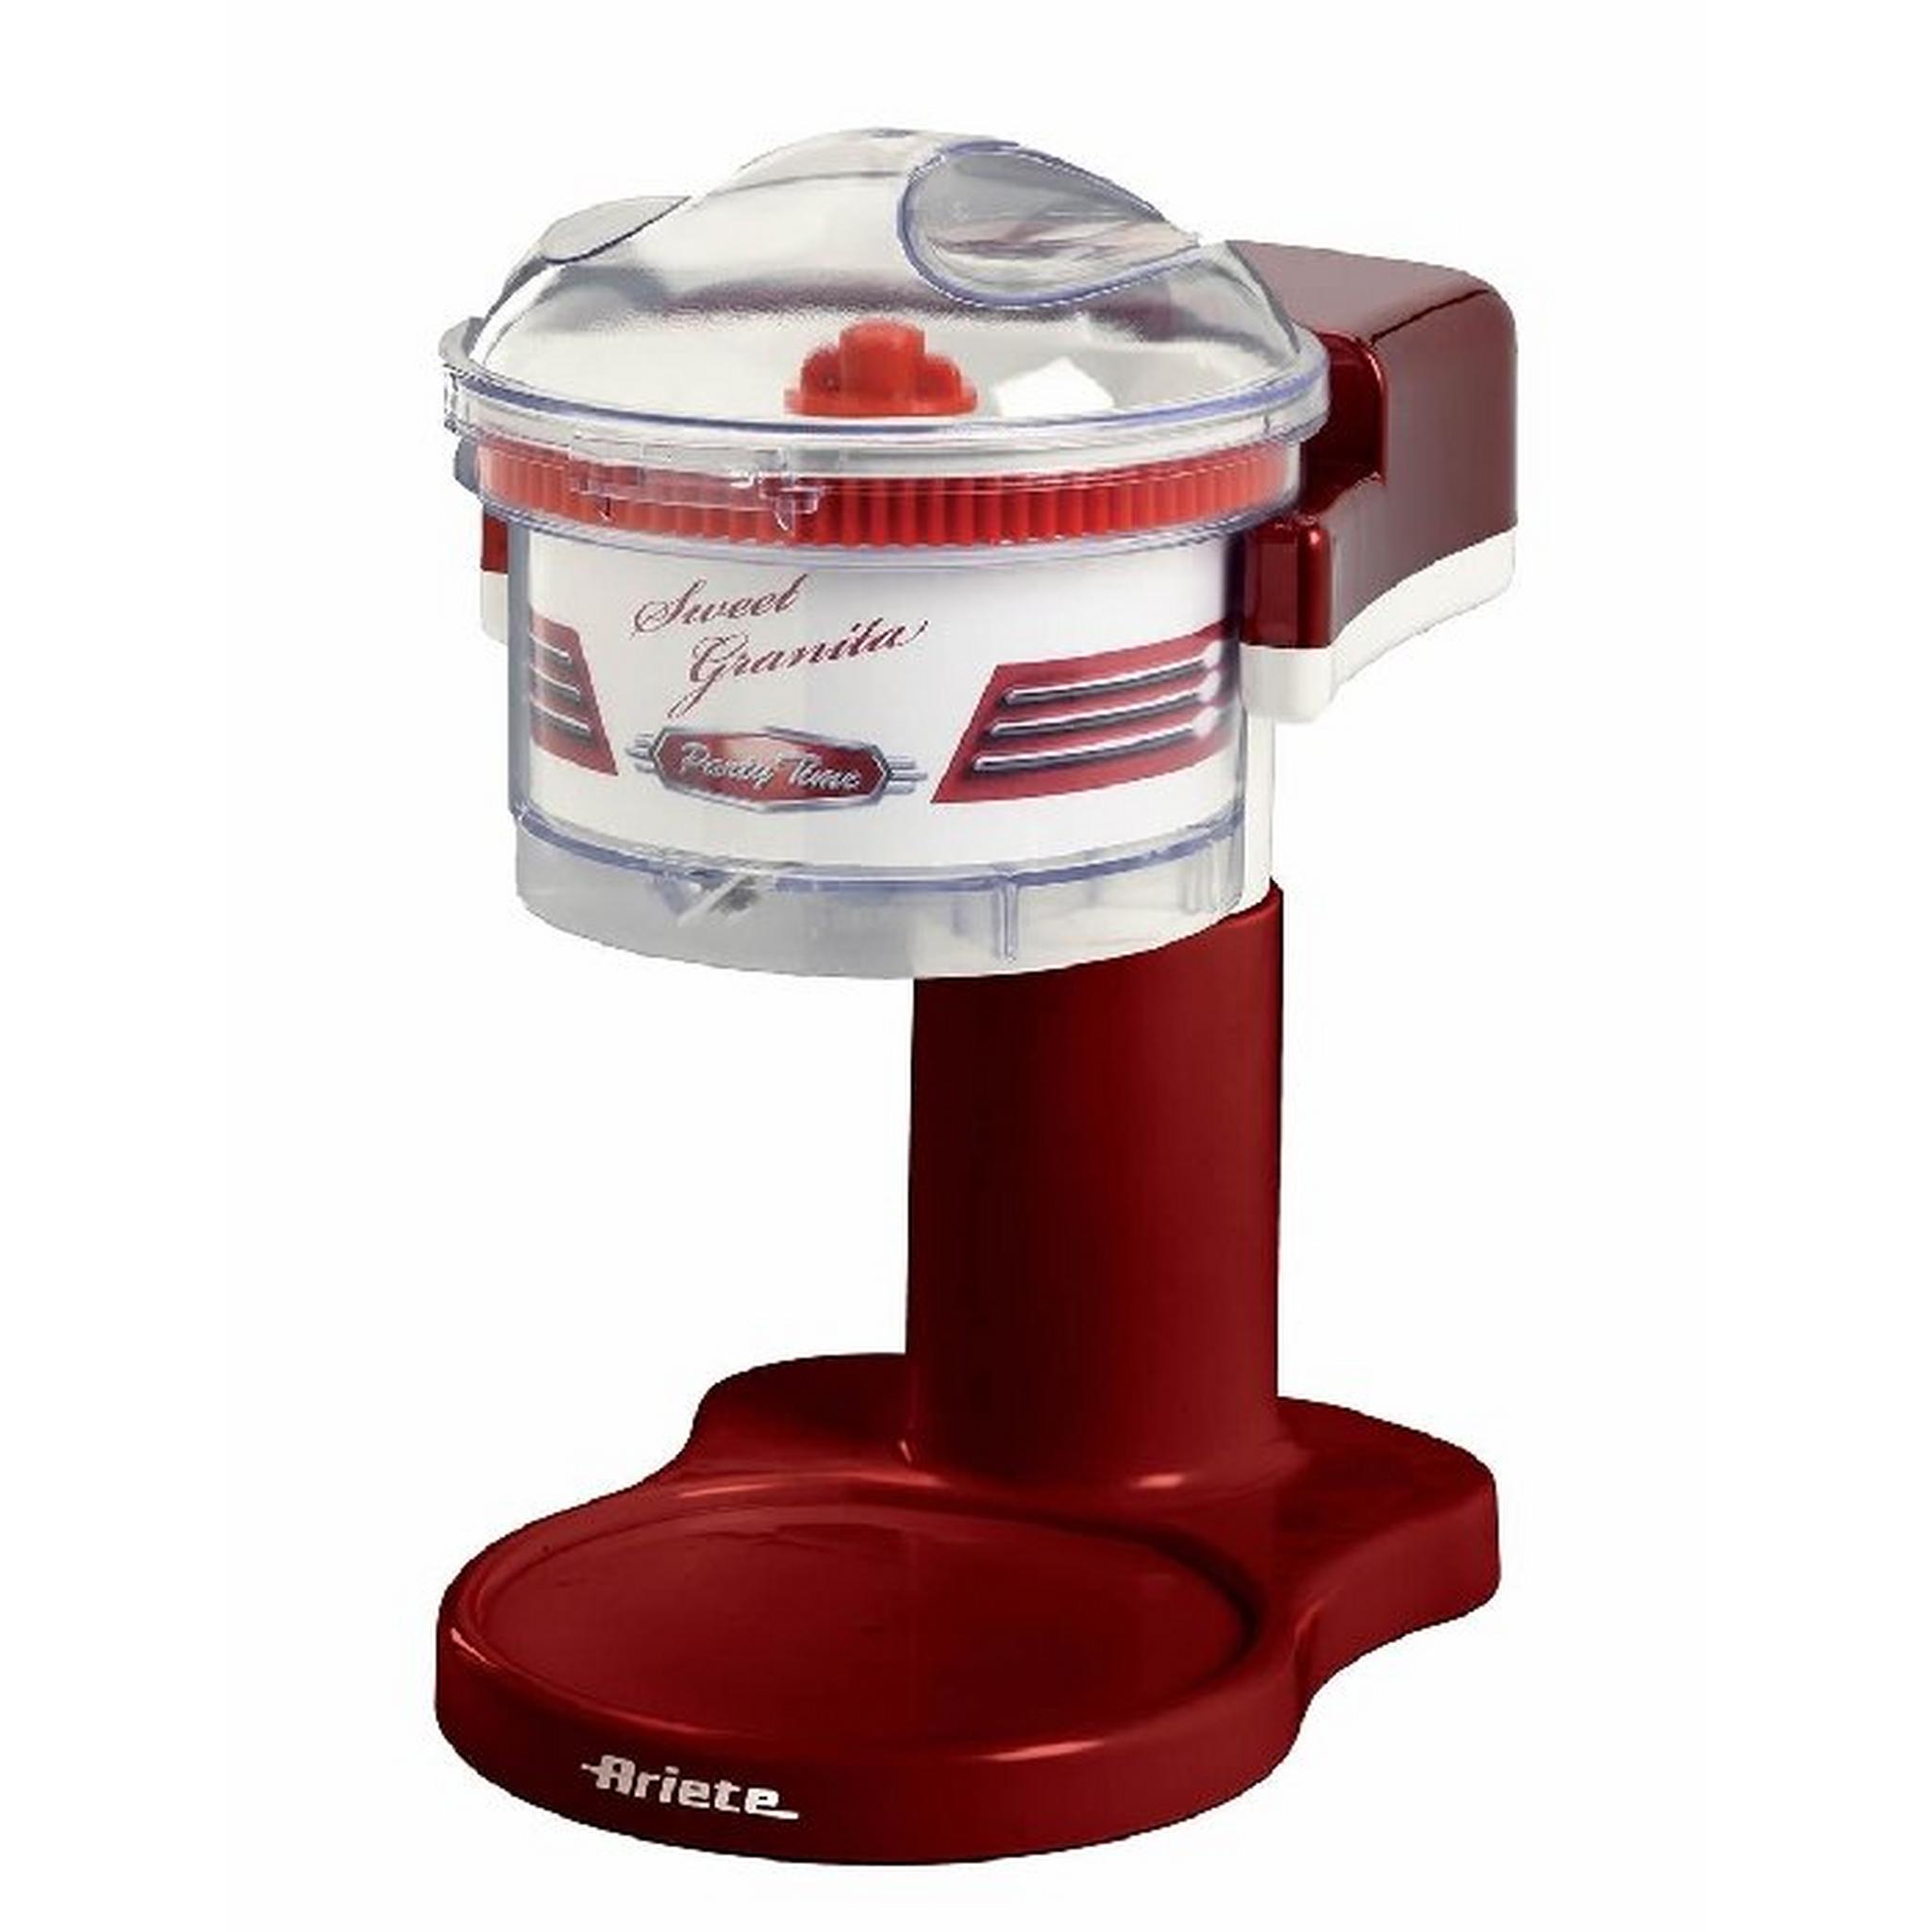 جهاز صنع المشروبات المثلجة سويت جرانيتا  من إيرتي (0078) - أحمر